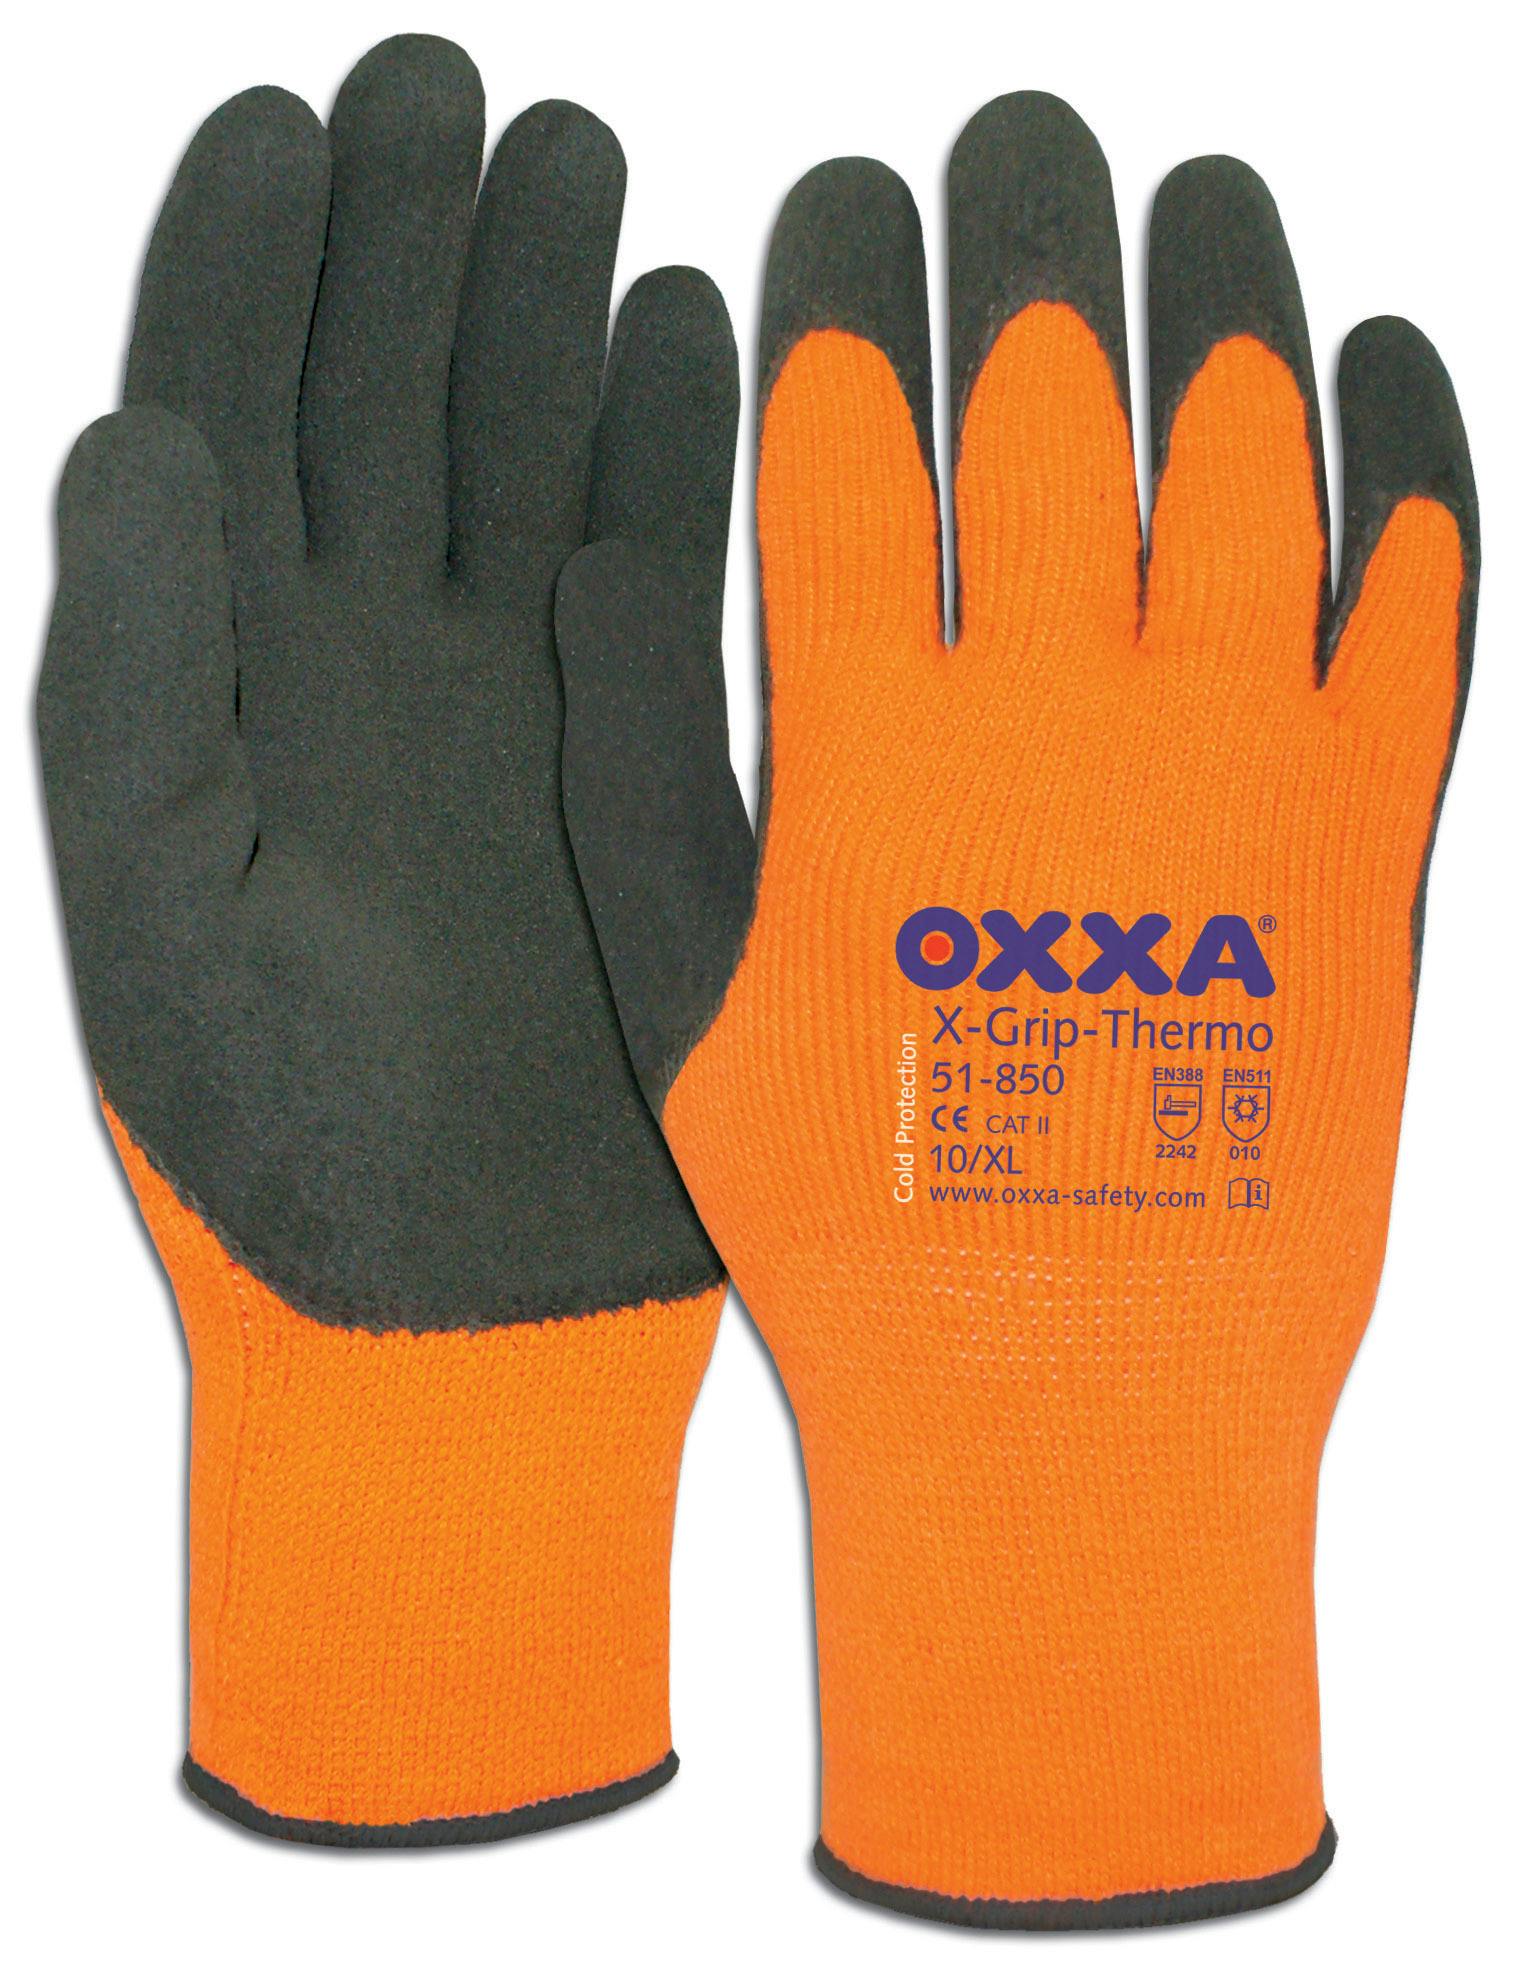 OXXA X-Grip-Thermo 51-850 gebreid tot -30C